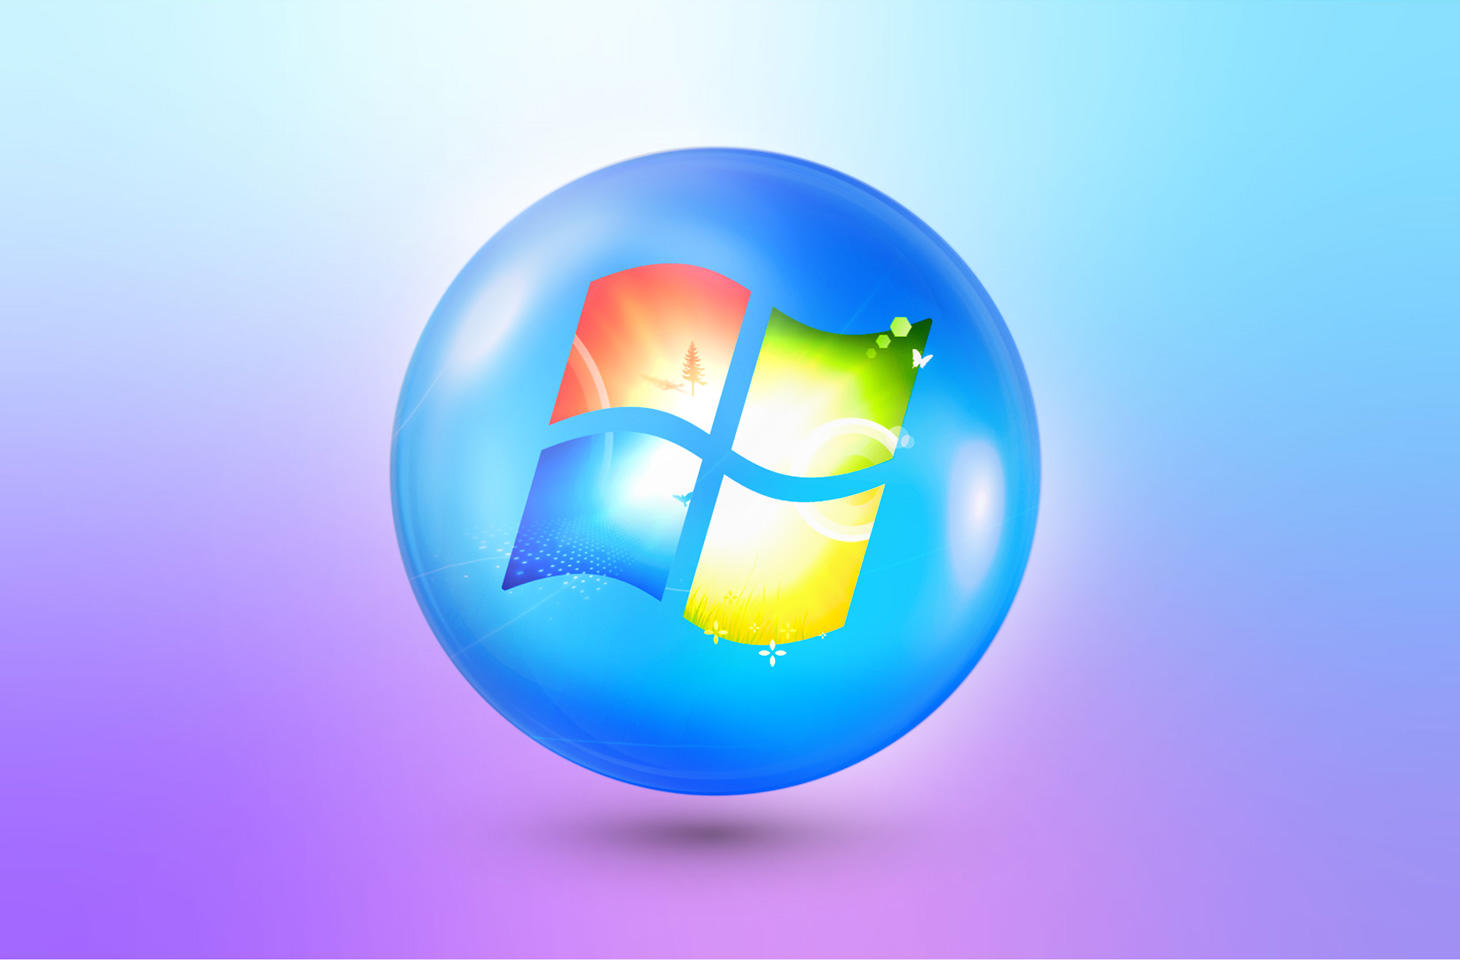 Windows 7 là một hệ điều hành tuyệt vời với nhiều tính năng mới và cải tiến. Dù bạn là một nhà phát triển chuyên nghiệp hay một người dùng cơ bản, hệ điều hành này sẽ đem đến cho bạn trải nghiệm tuyệt vời và được cập nhật thường xuyên. Hình ảnh liên quan sẽ giúp bạn cảm nhận được sự khác biêt và đột phá mà Windows 7 mang lại.